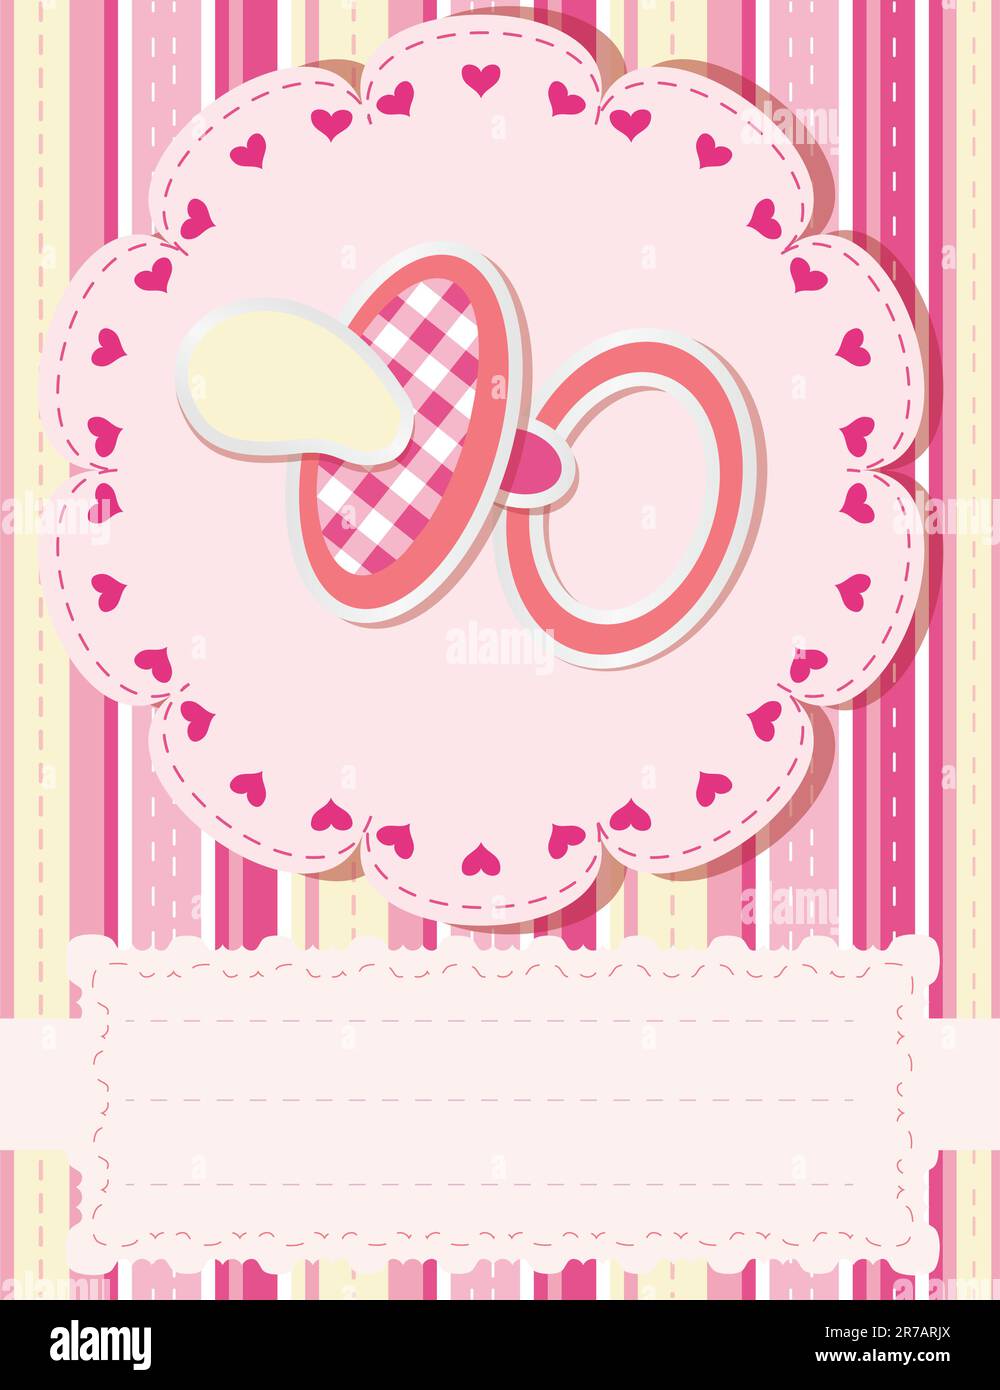 Feliz cumpleaños niña pequeña con caja de regalo en hermoso jardín. Niño  comer feliz cumpleaños rosa cupcake. Colorido pastel decoración al aire  libre. 4 años k Fotografía de stock - Alamy